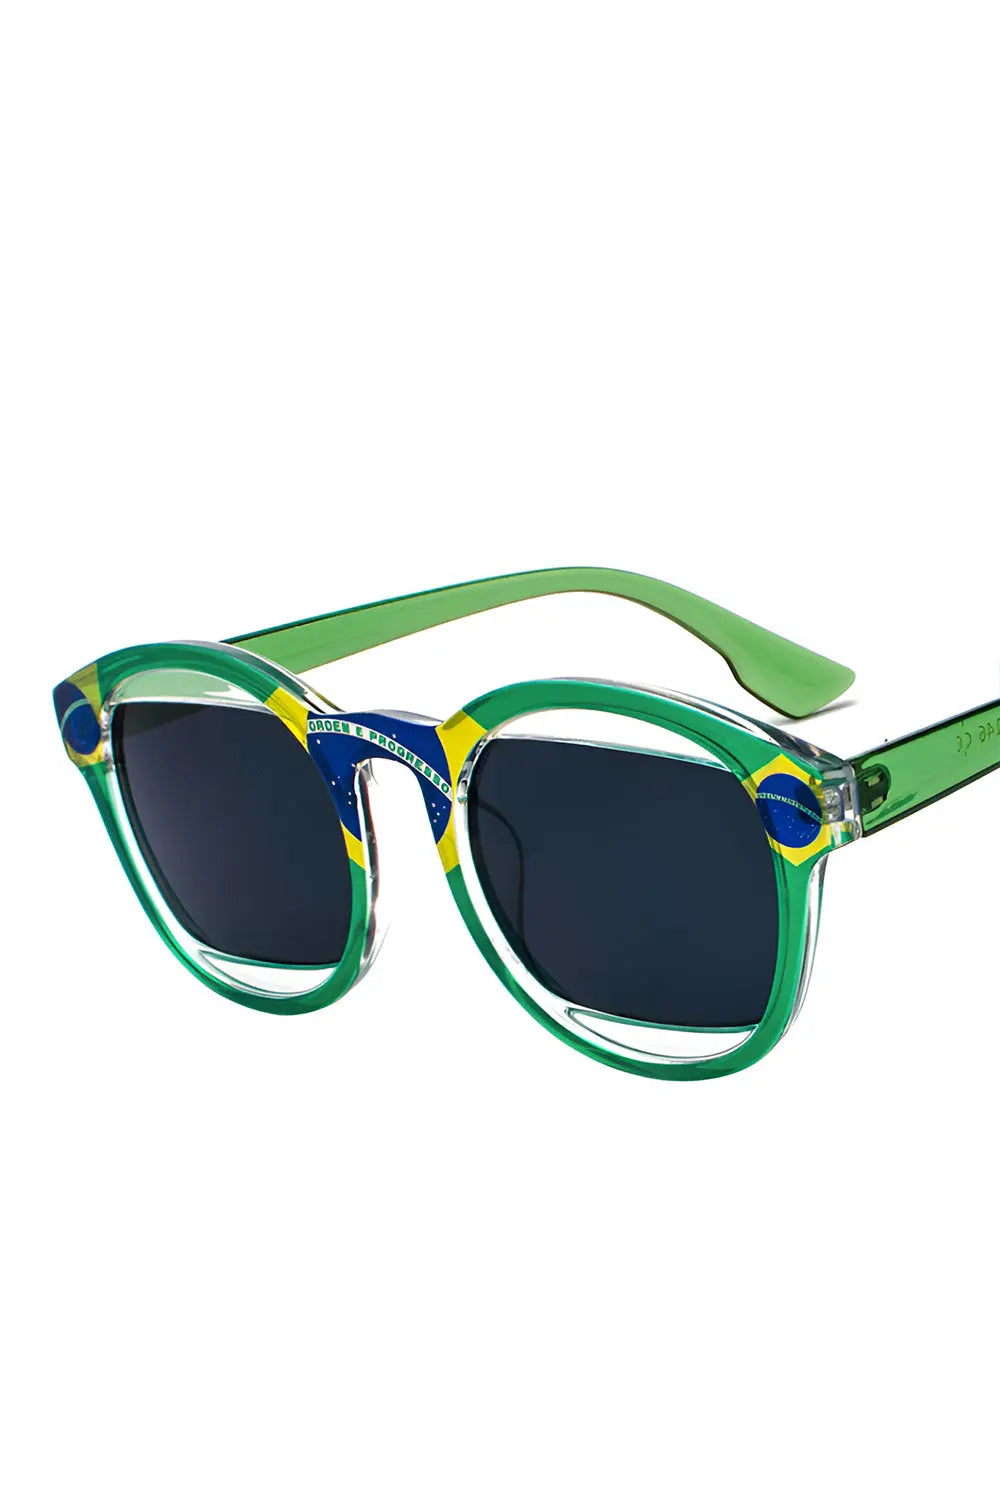 Multicolored Sunglasses - Brazil - Strange Clothes